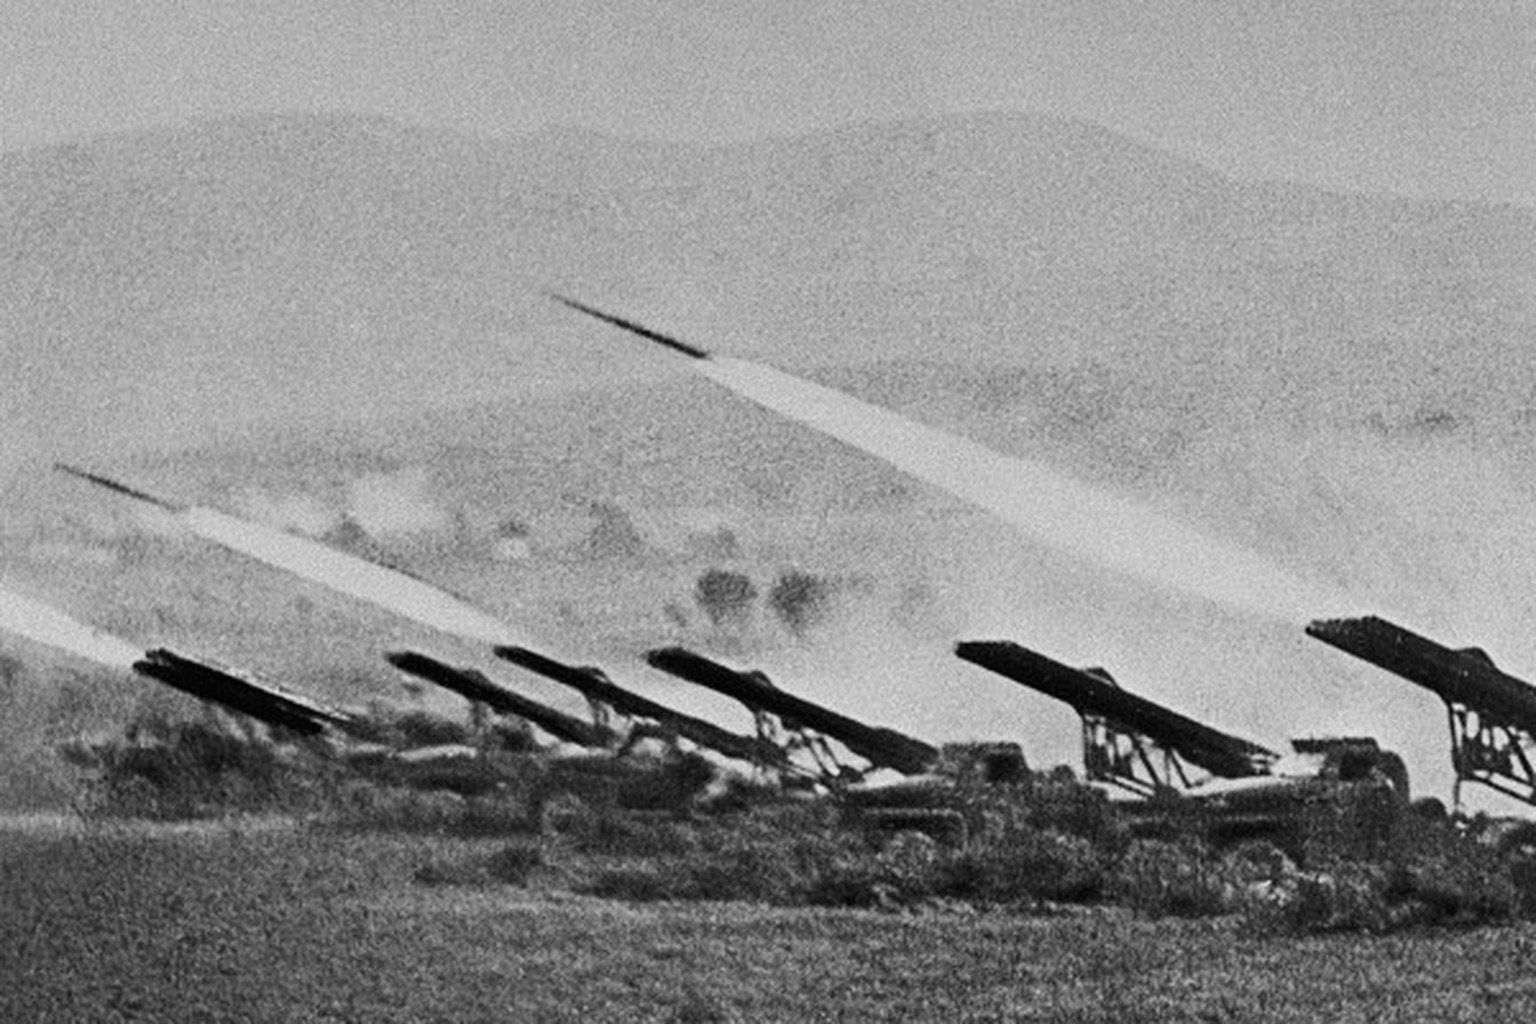 Katjuscha-Raketenwerfer (sowjetische Mehrfachraketenwerfer)&nbsp;im Einsatz gegen die deutsche Wehrmacht während der Schlacht von Stalingrad.